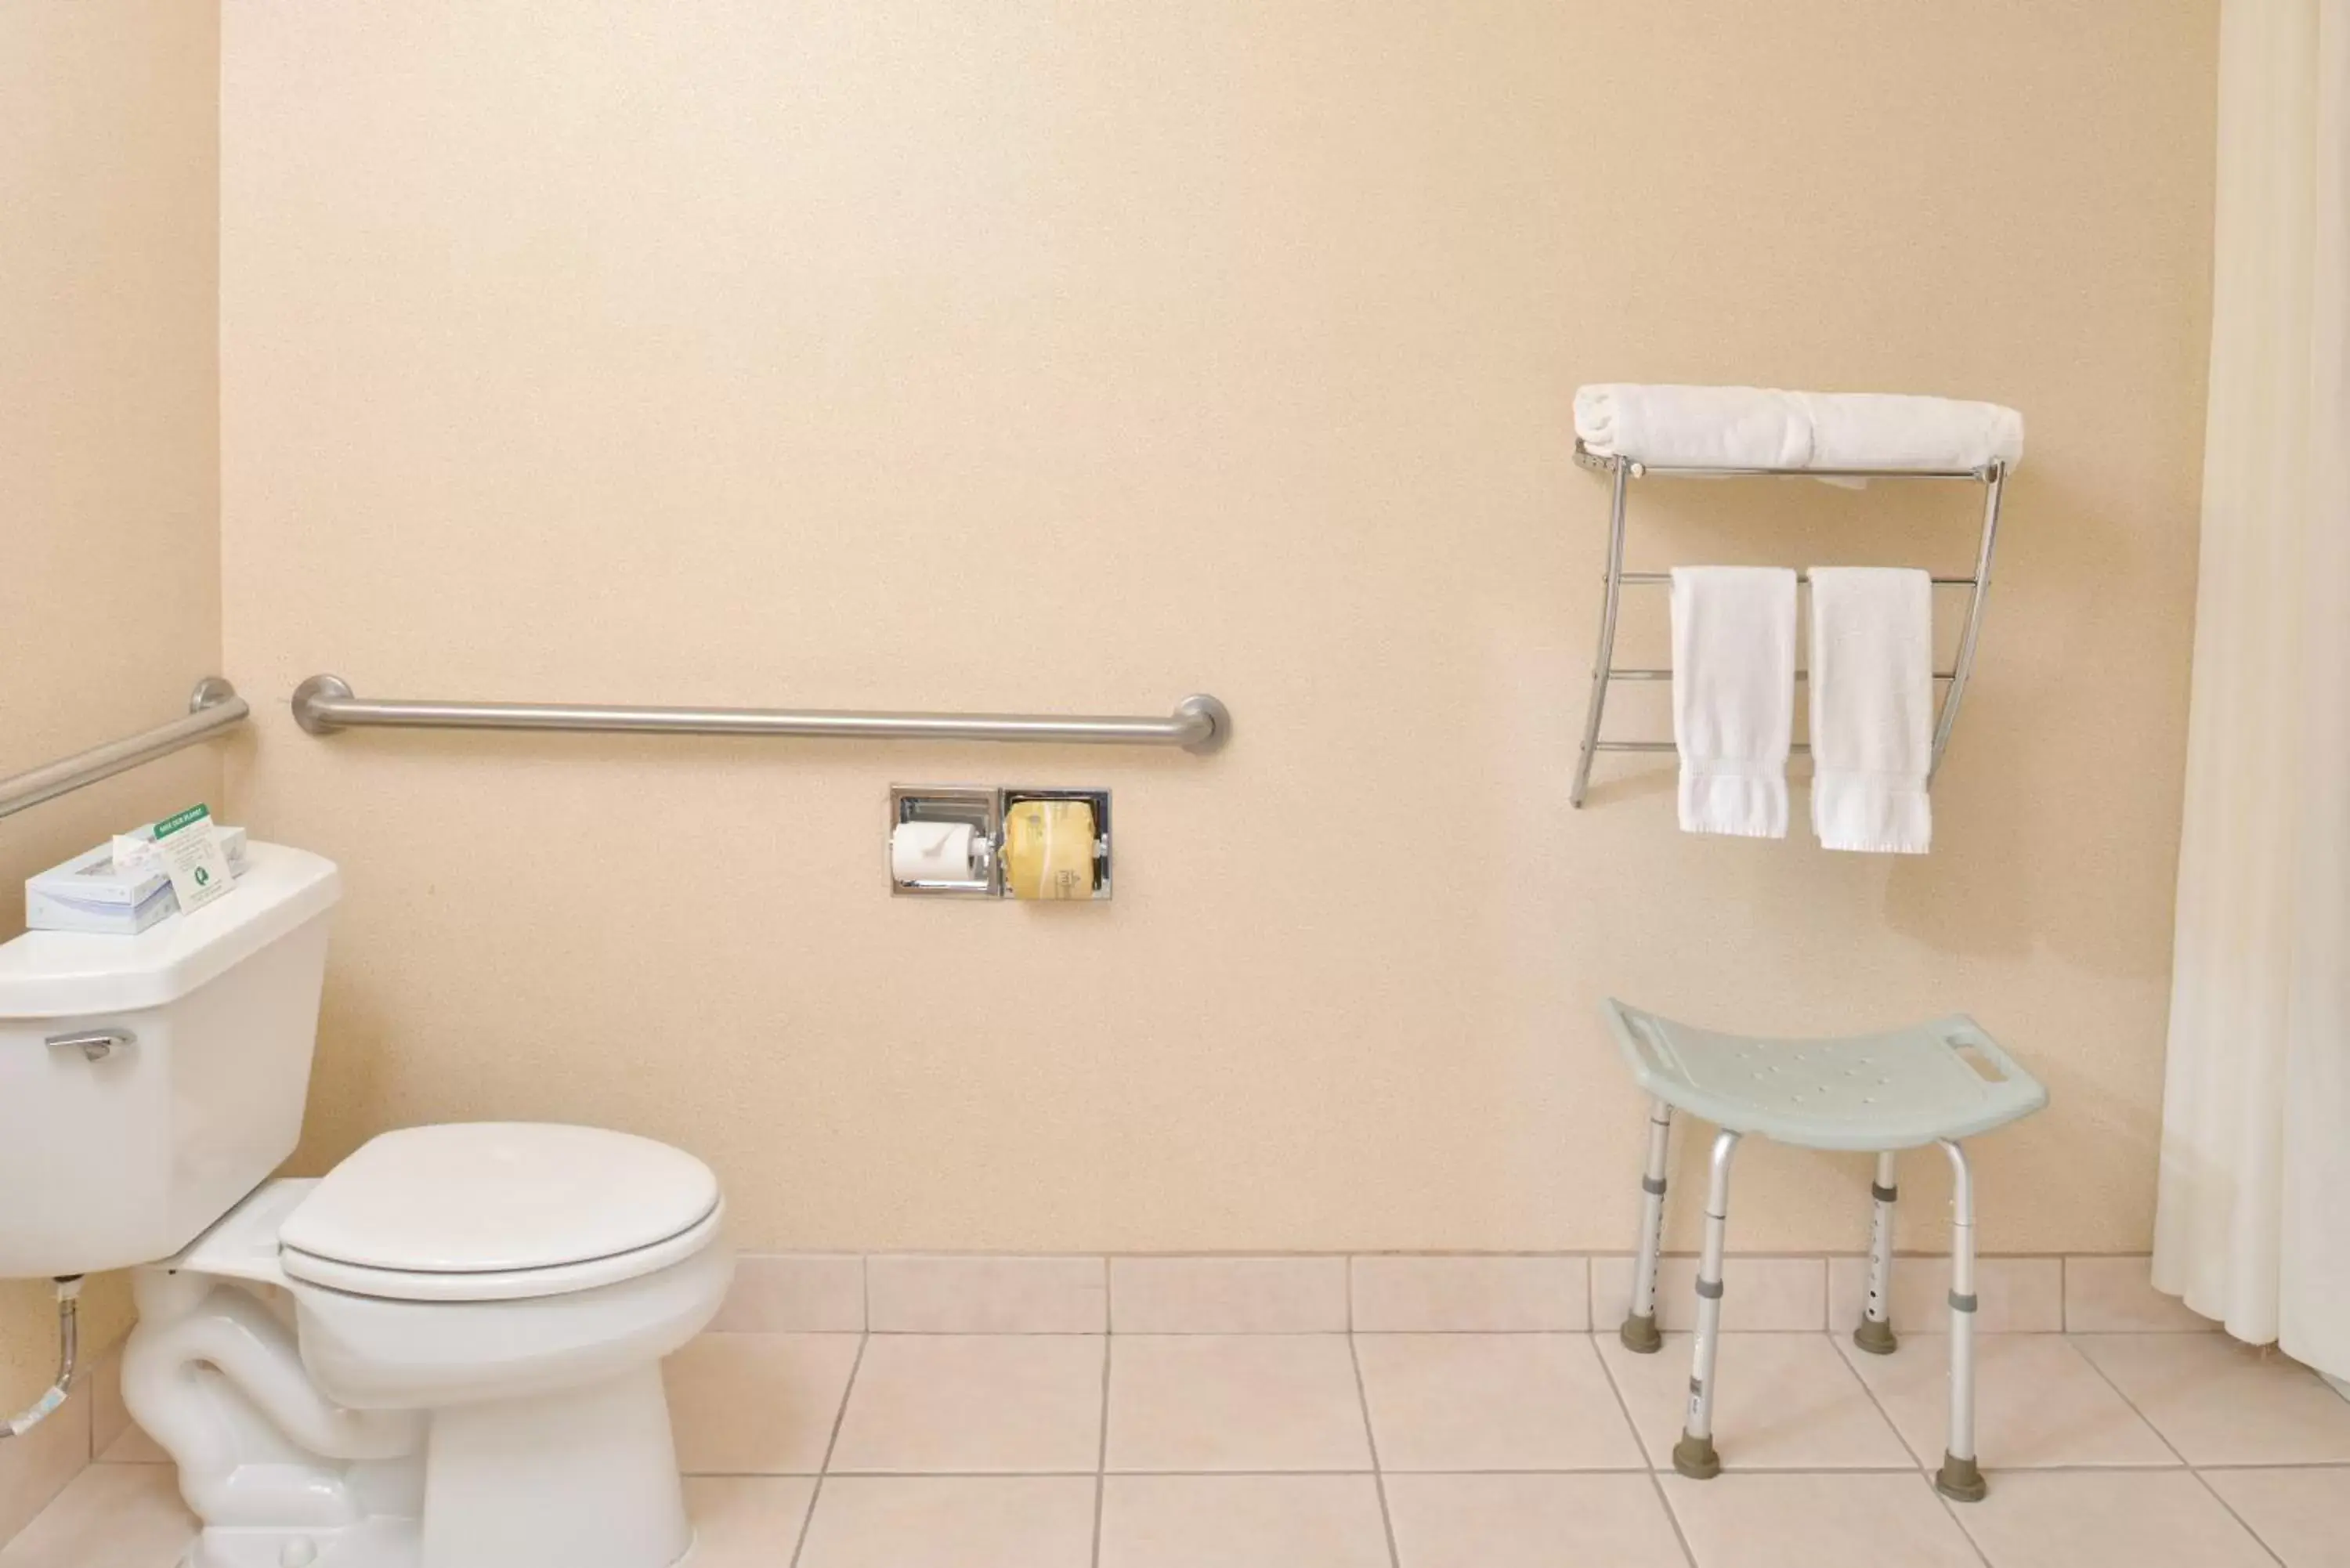 Toilet, Bathroom in Americas Best Value Inn - Joshua Tree/Twentynine Palms